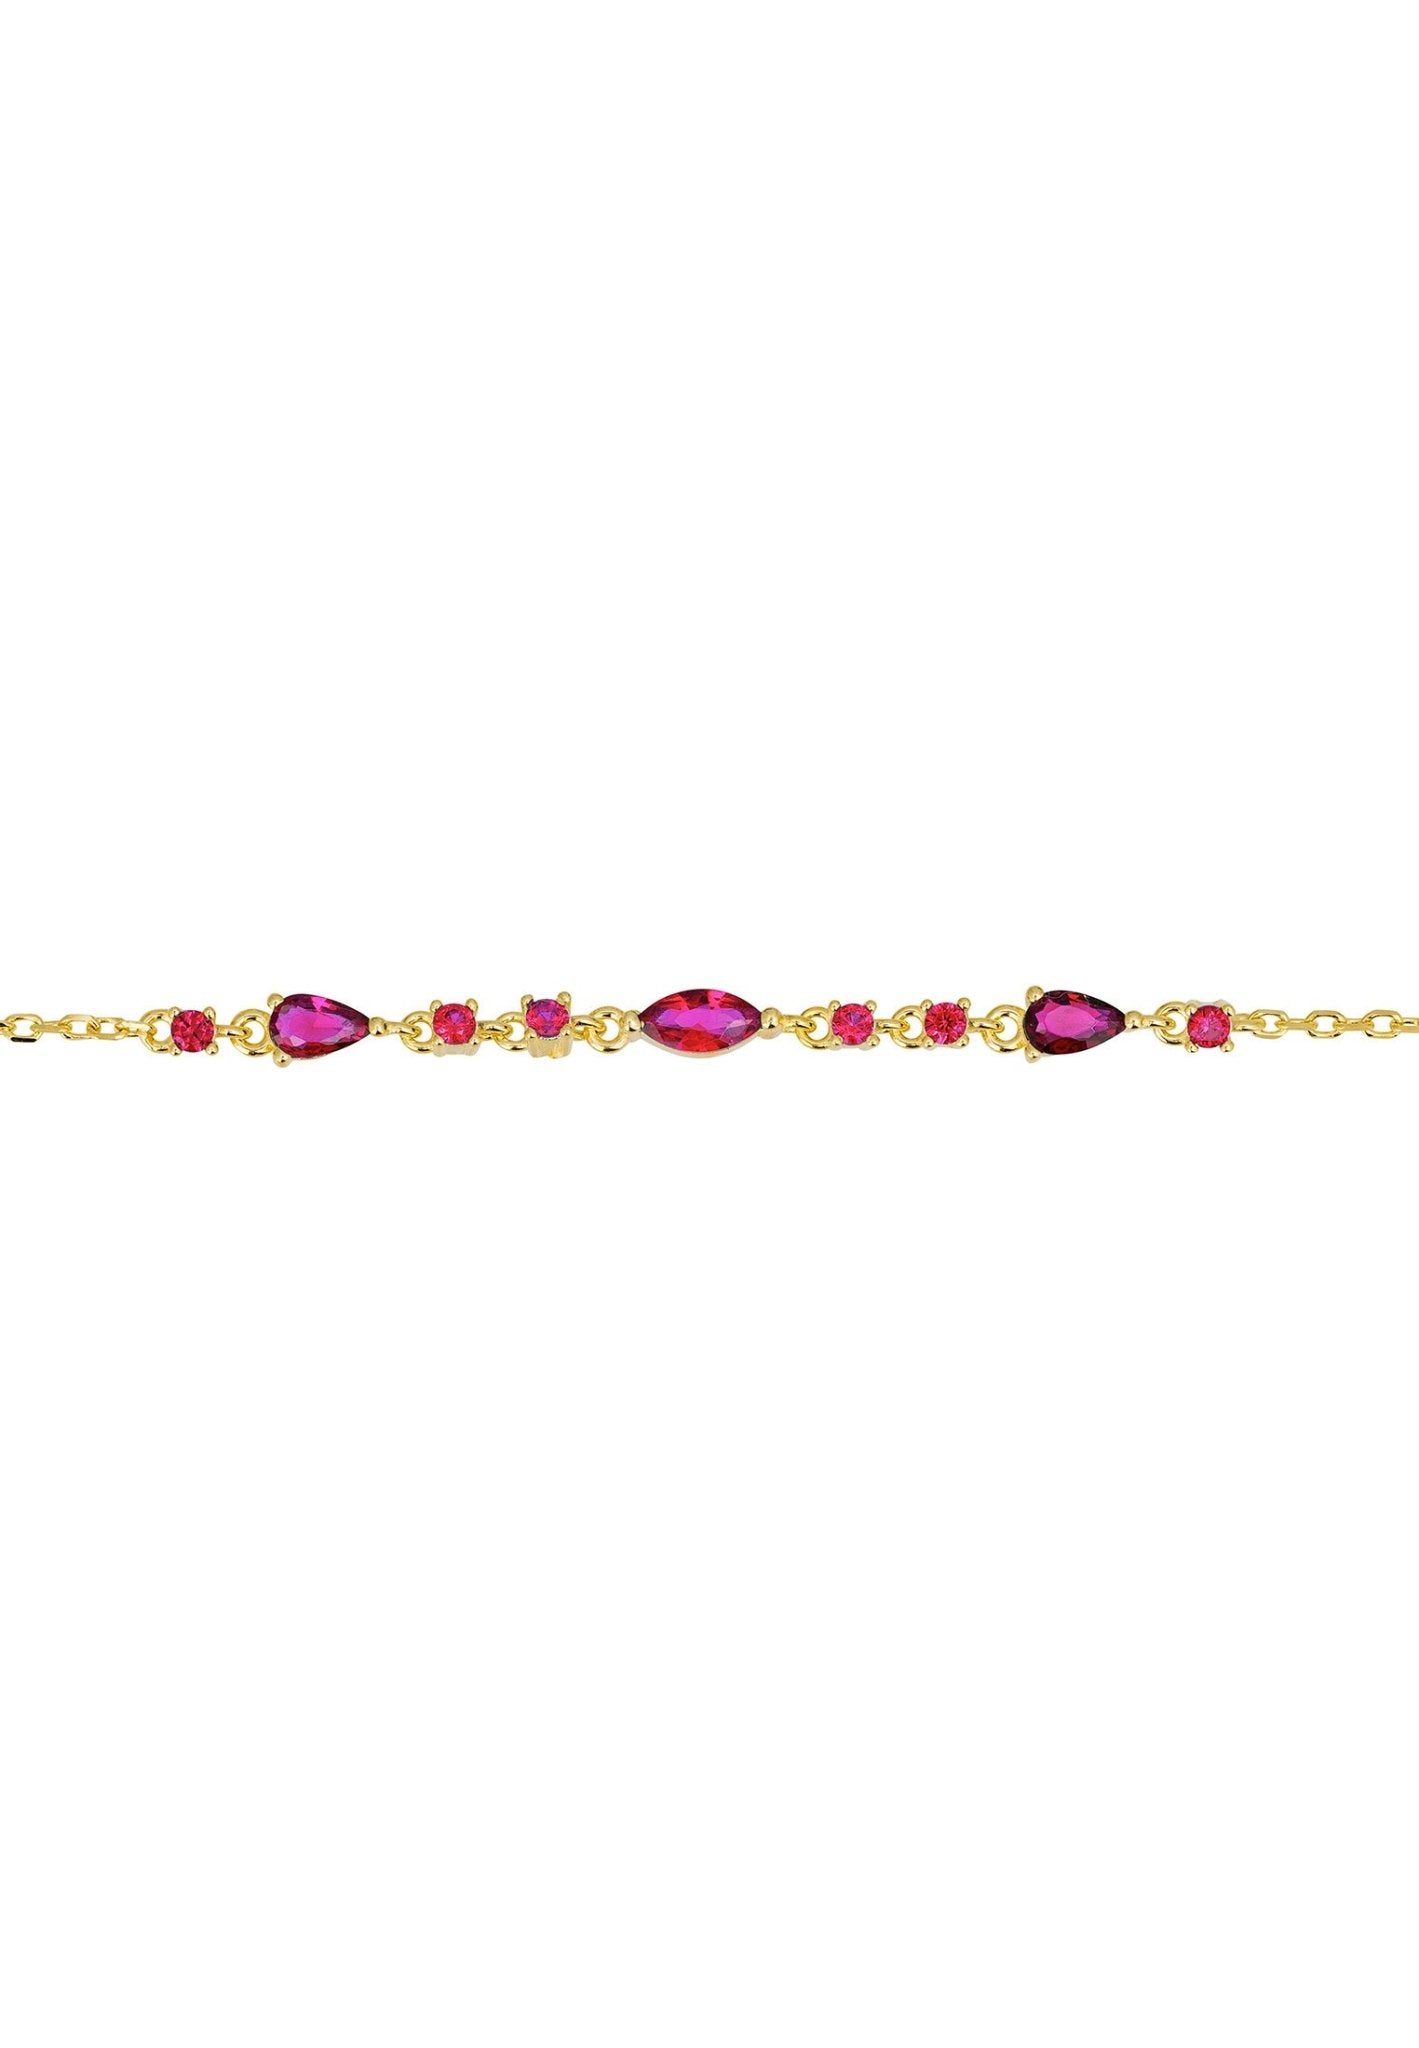 Olivia Bracelet Ruby Red Gold - LATELITA Bracelets